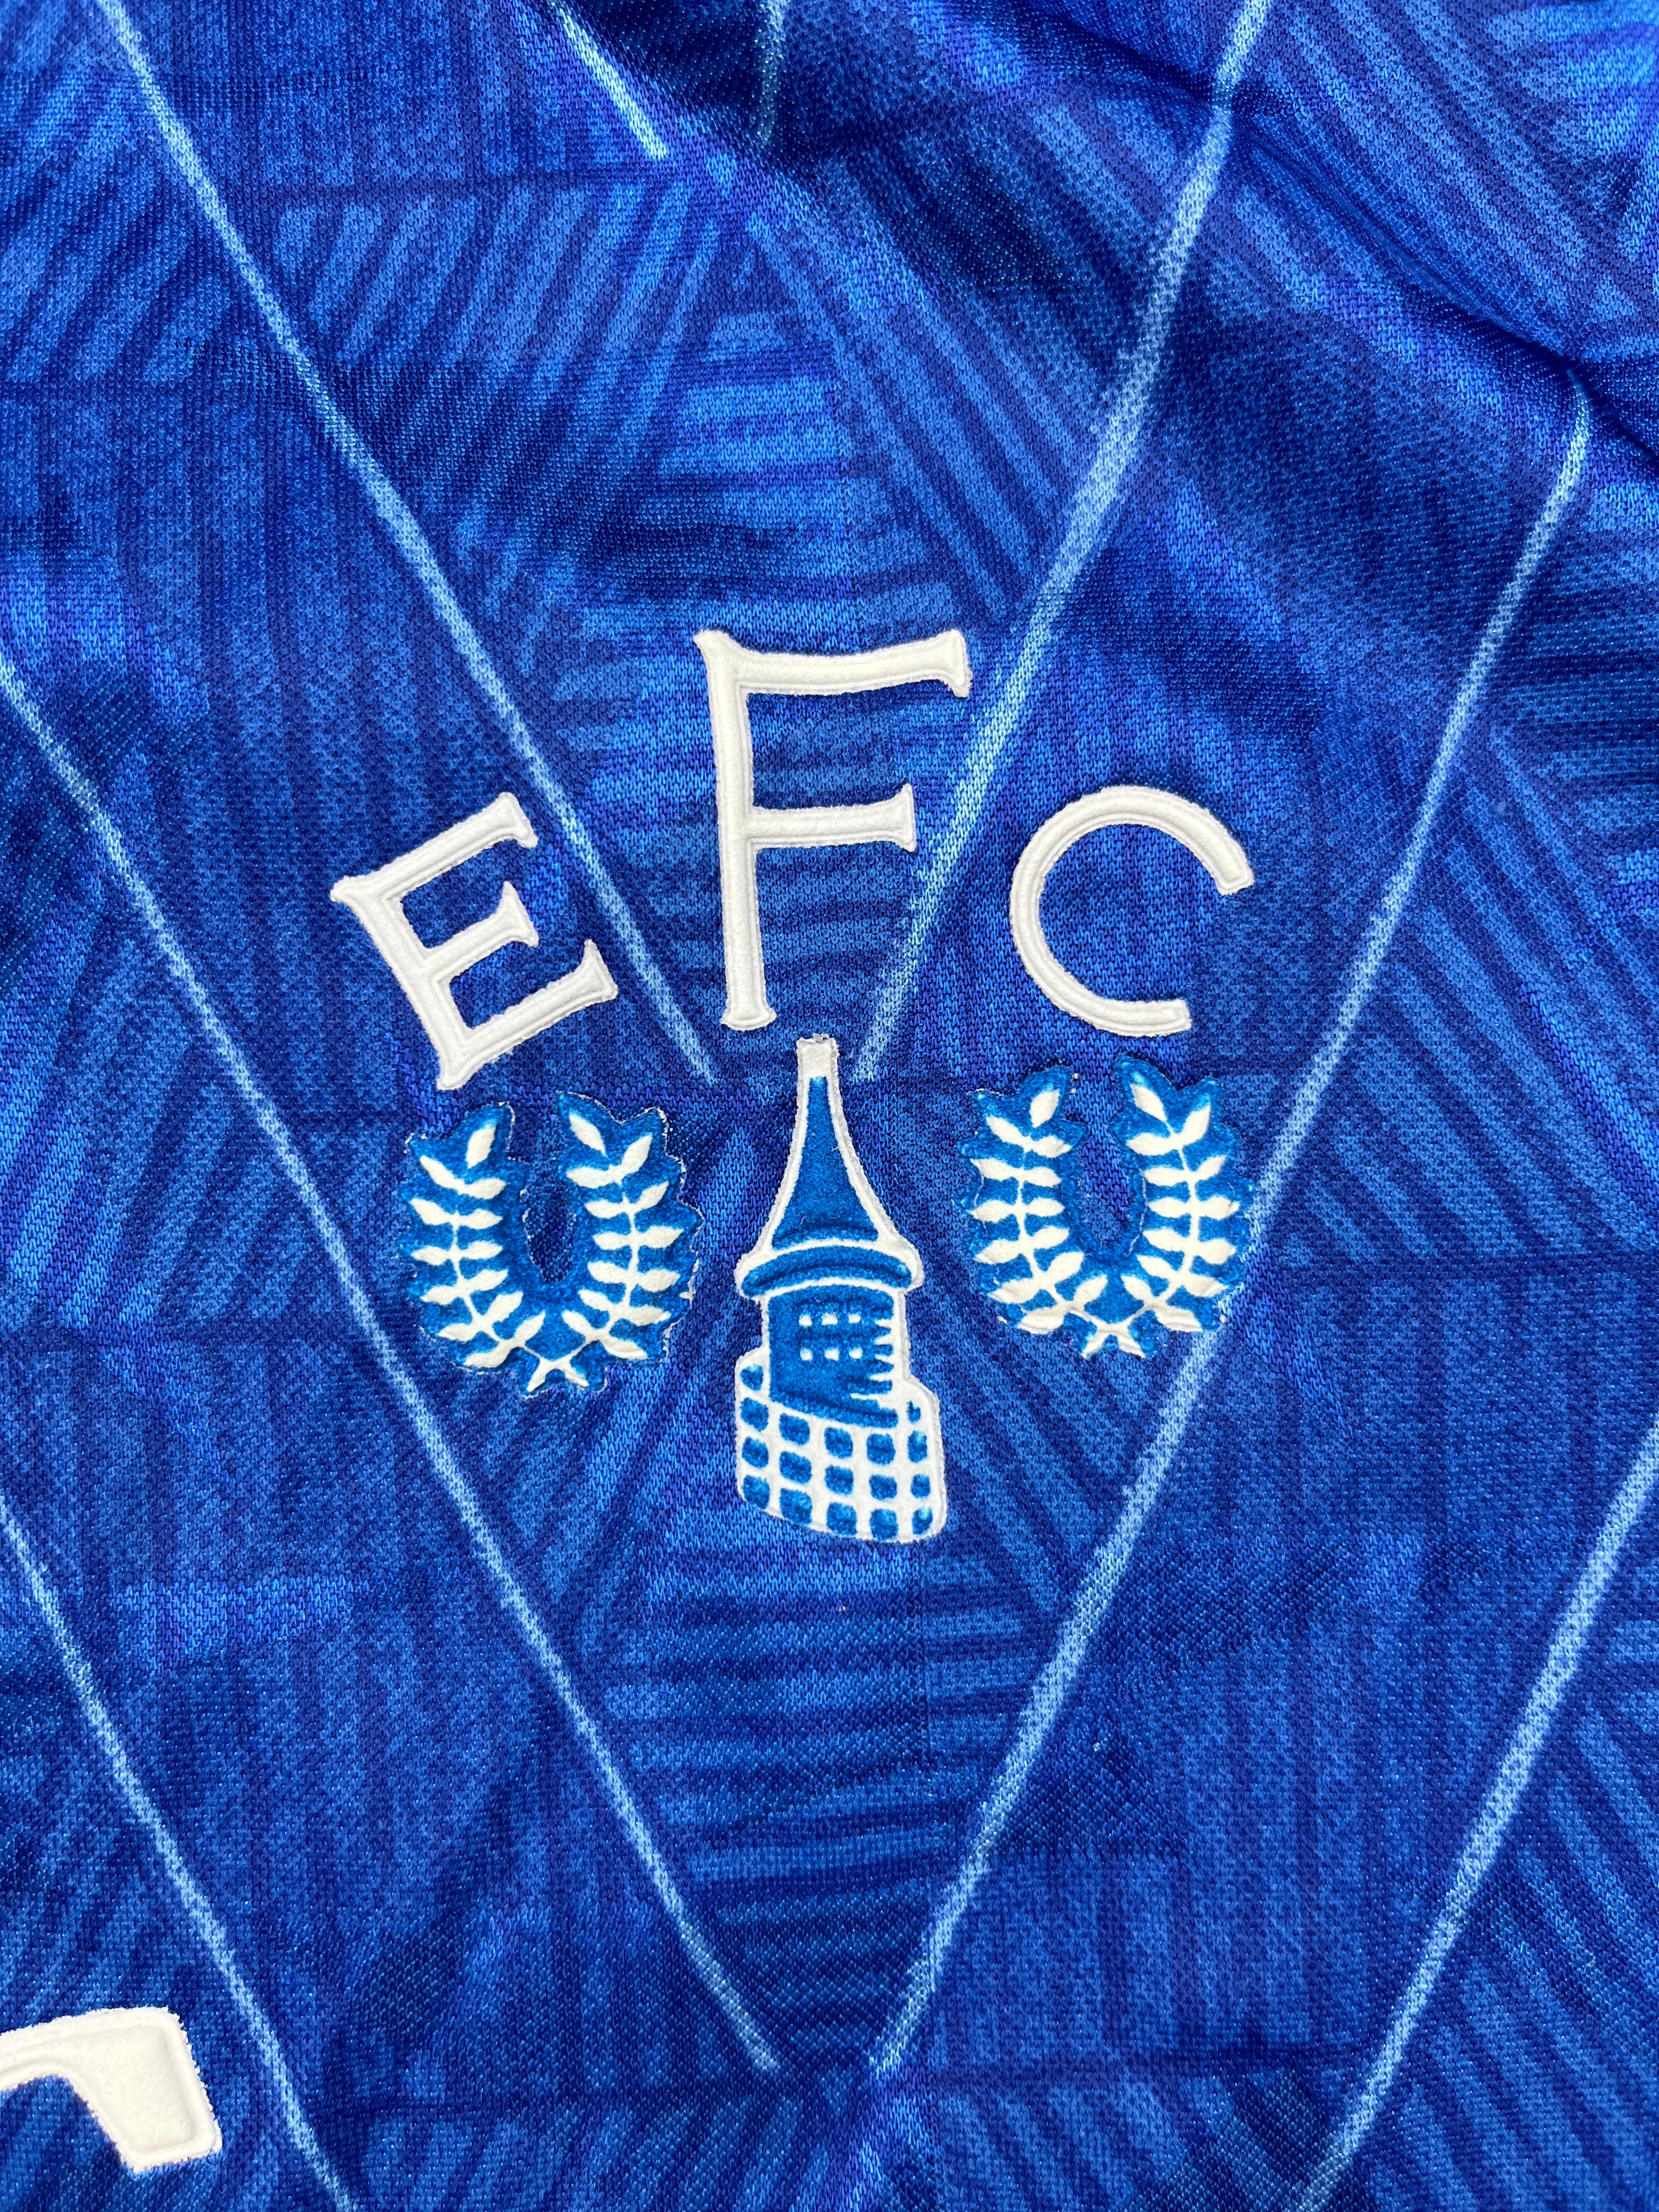 1989/91 Camiseta local del Everton (S) 9/10 